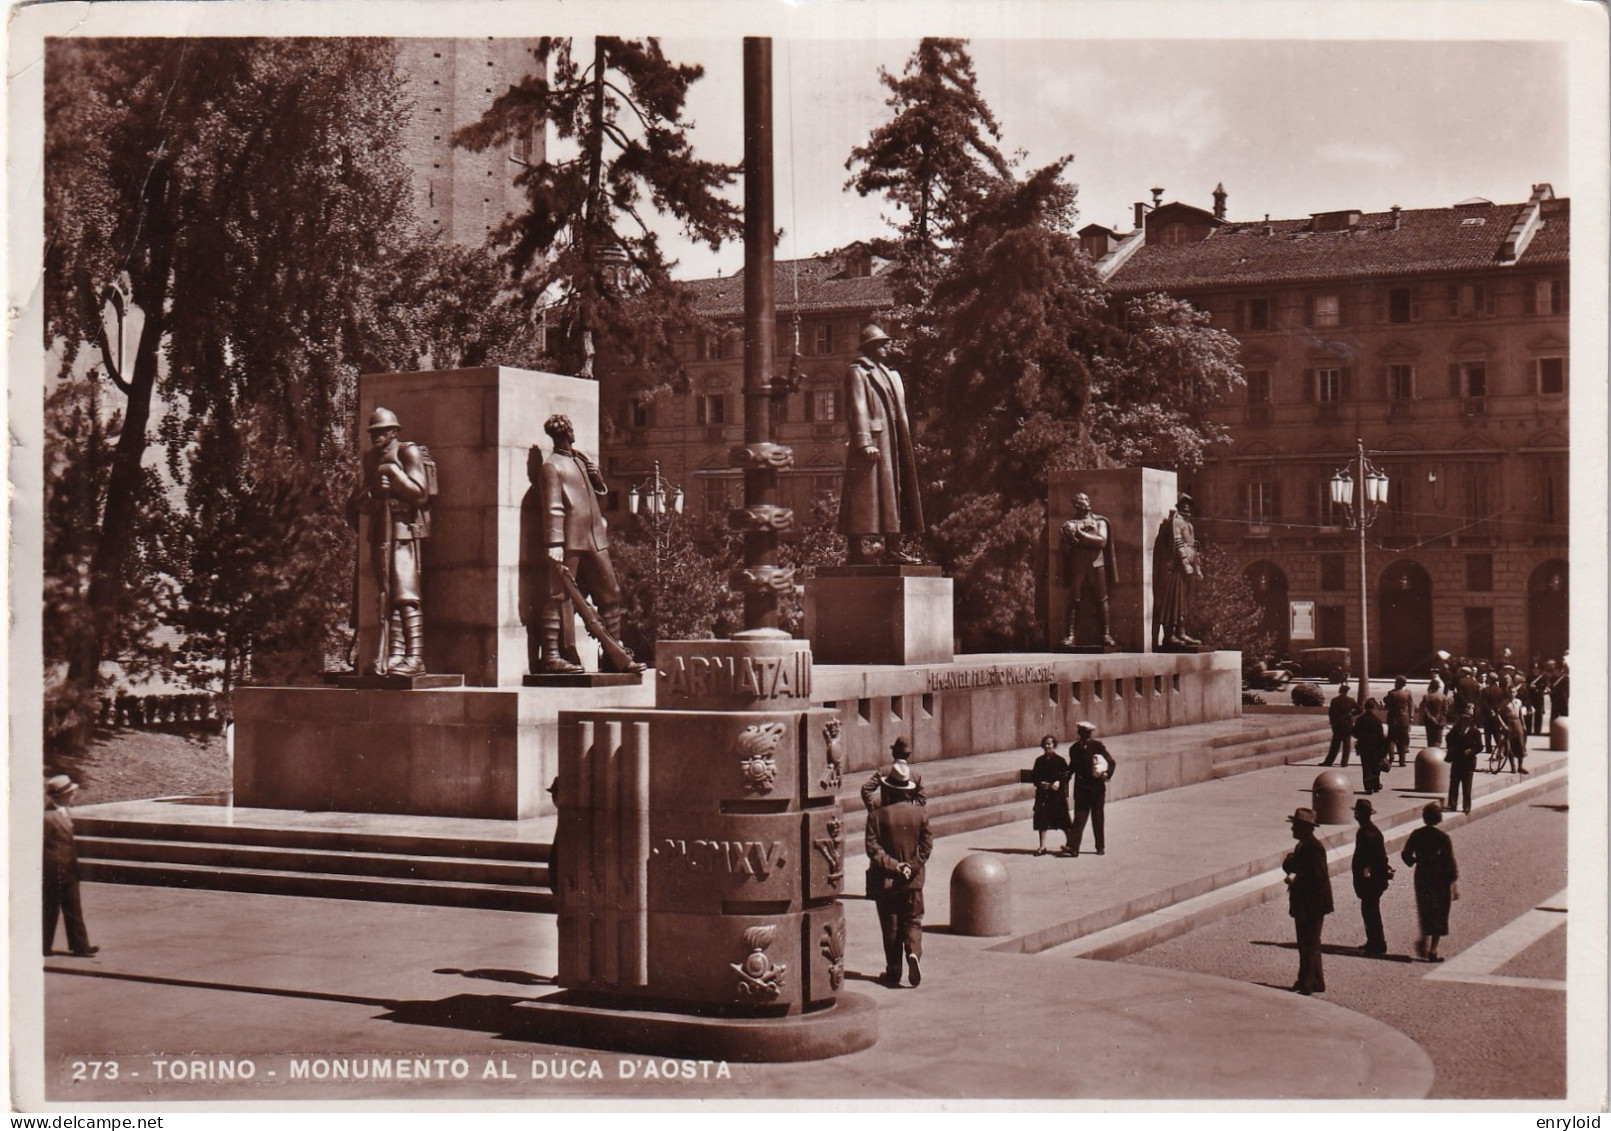 Torino Monumento Al Duca D'Aosta - Andere Monumente & Gebäude